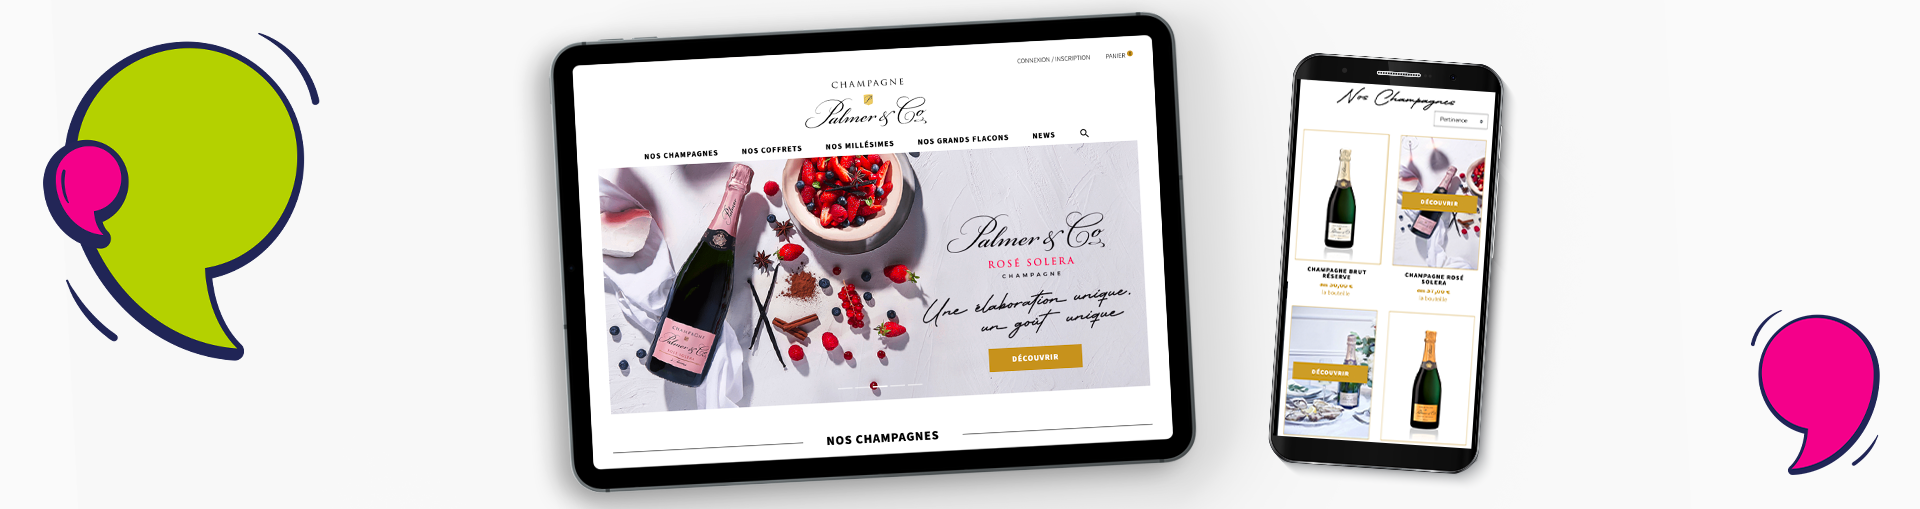 Exemple de site e-commerce réalisé par l'agence sous Prestashop dans l'univers du champagne